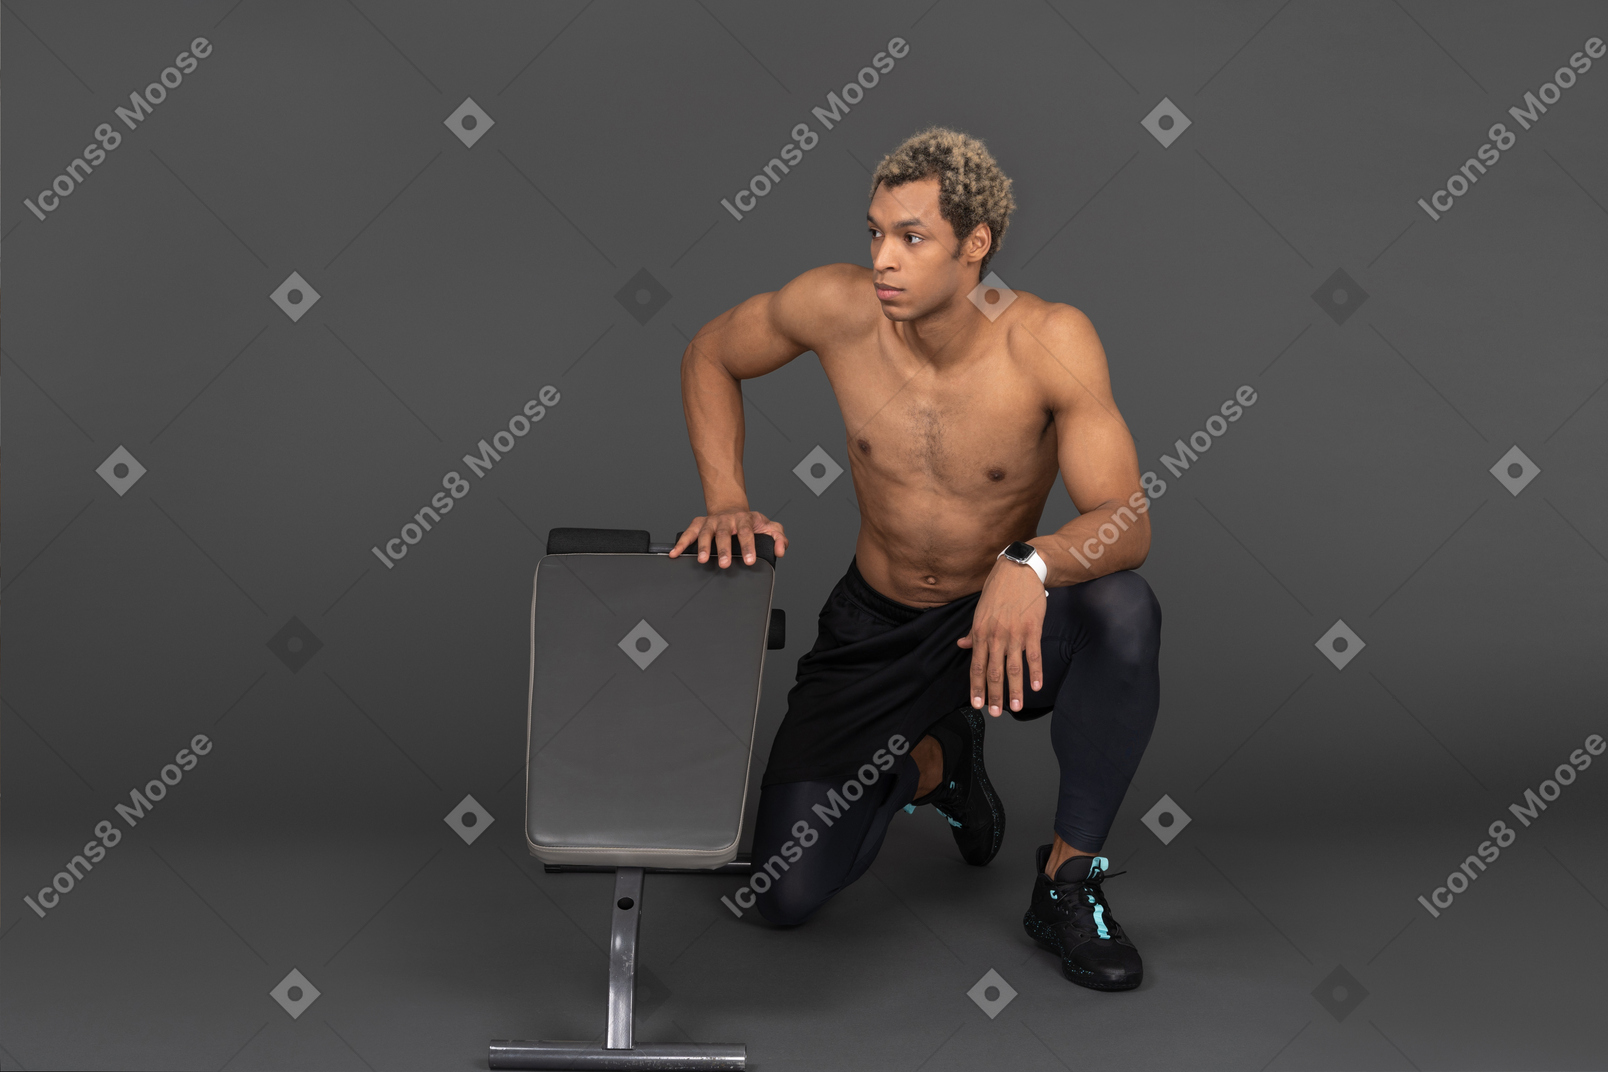 Vista frontal de un hombre afro sin camisa sentado junto a la cinta de correr